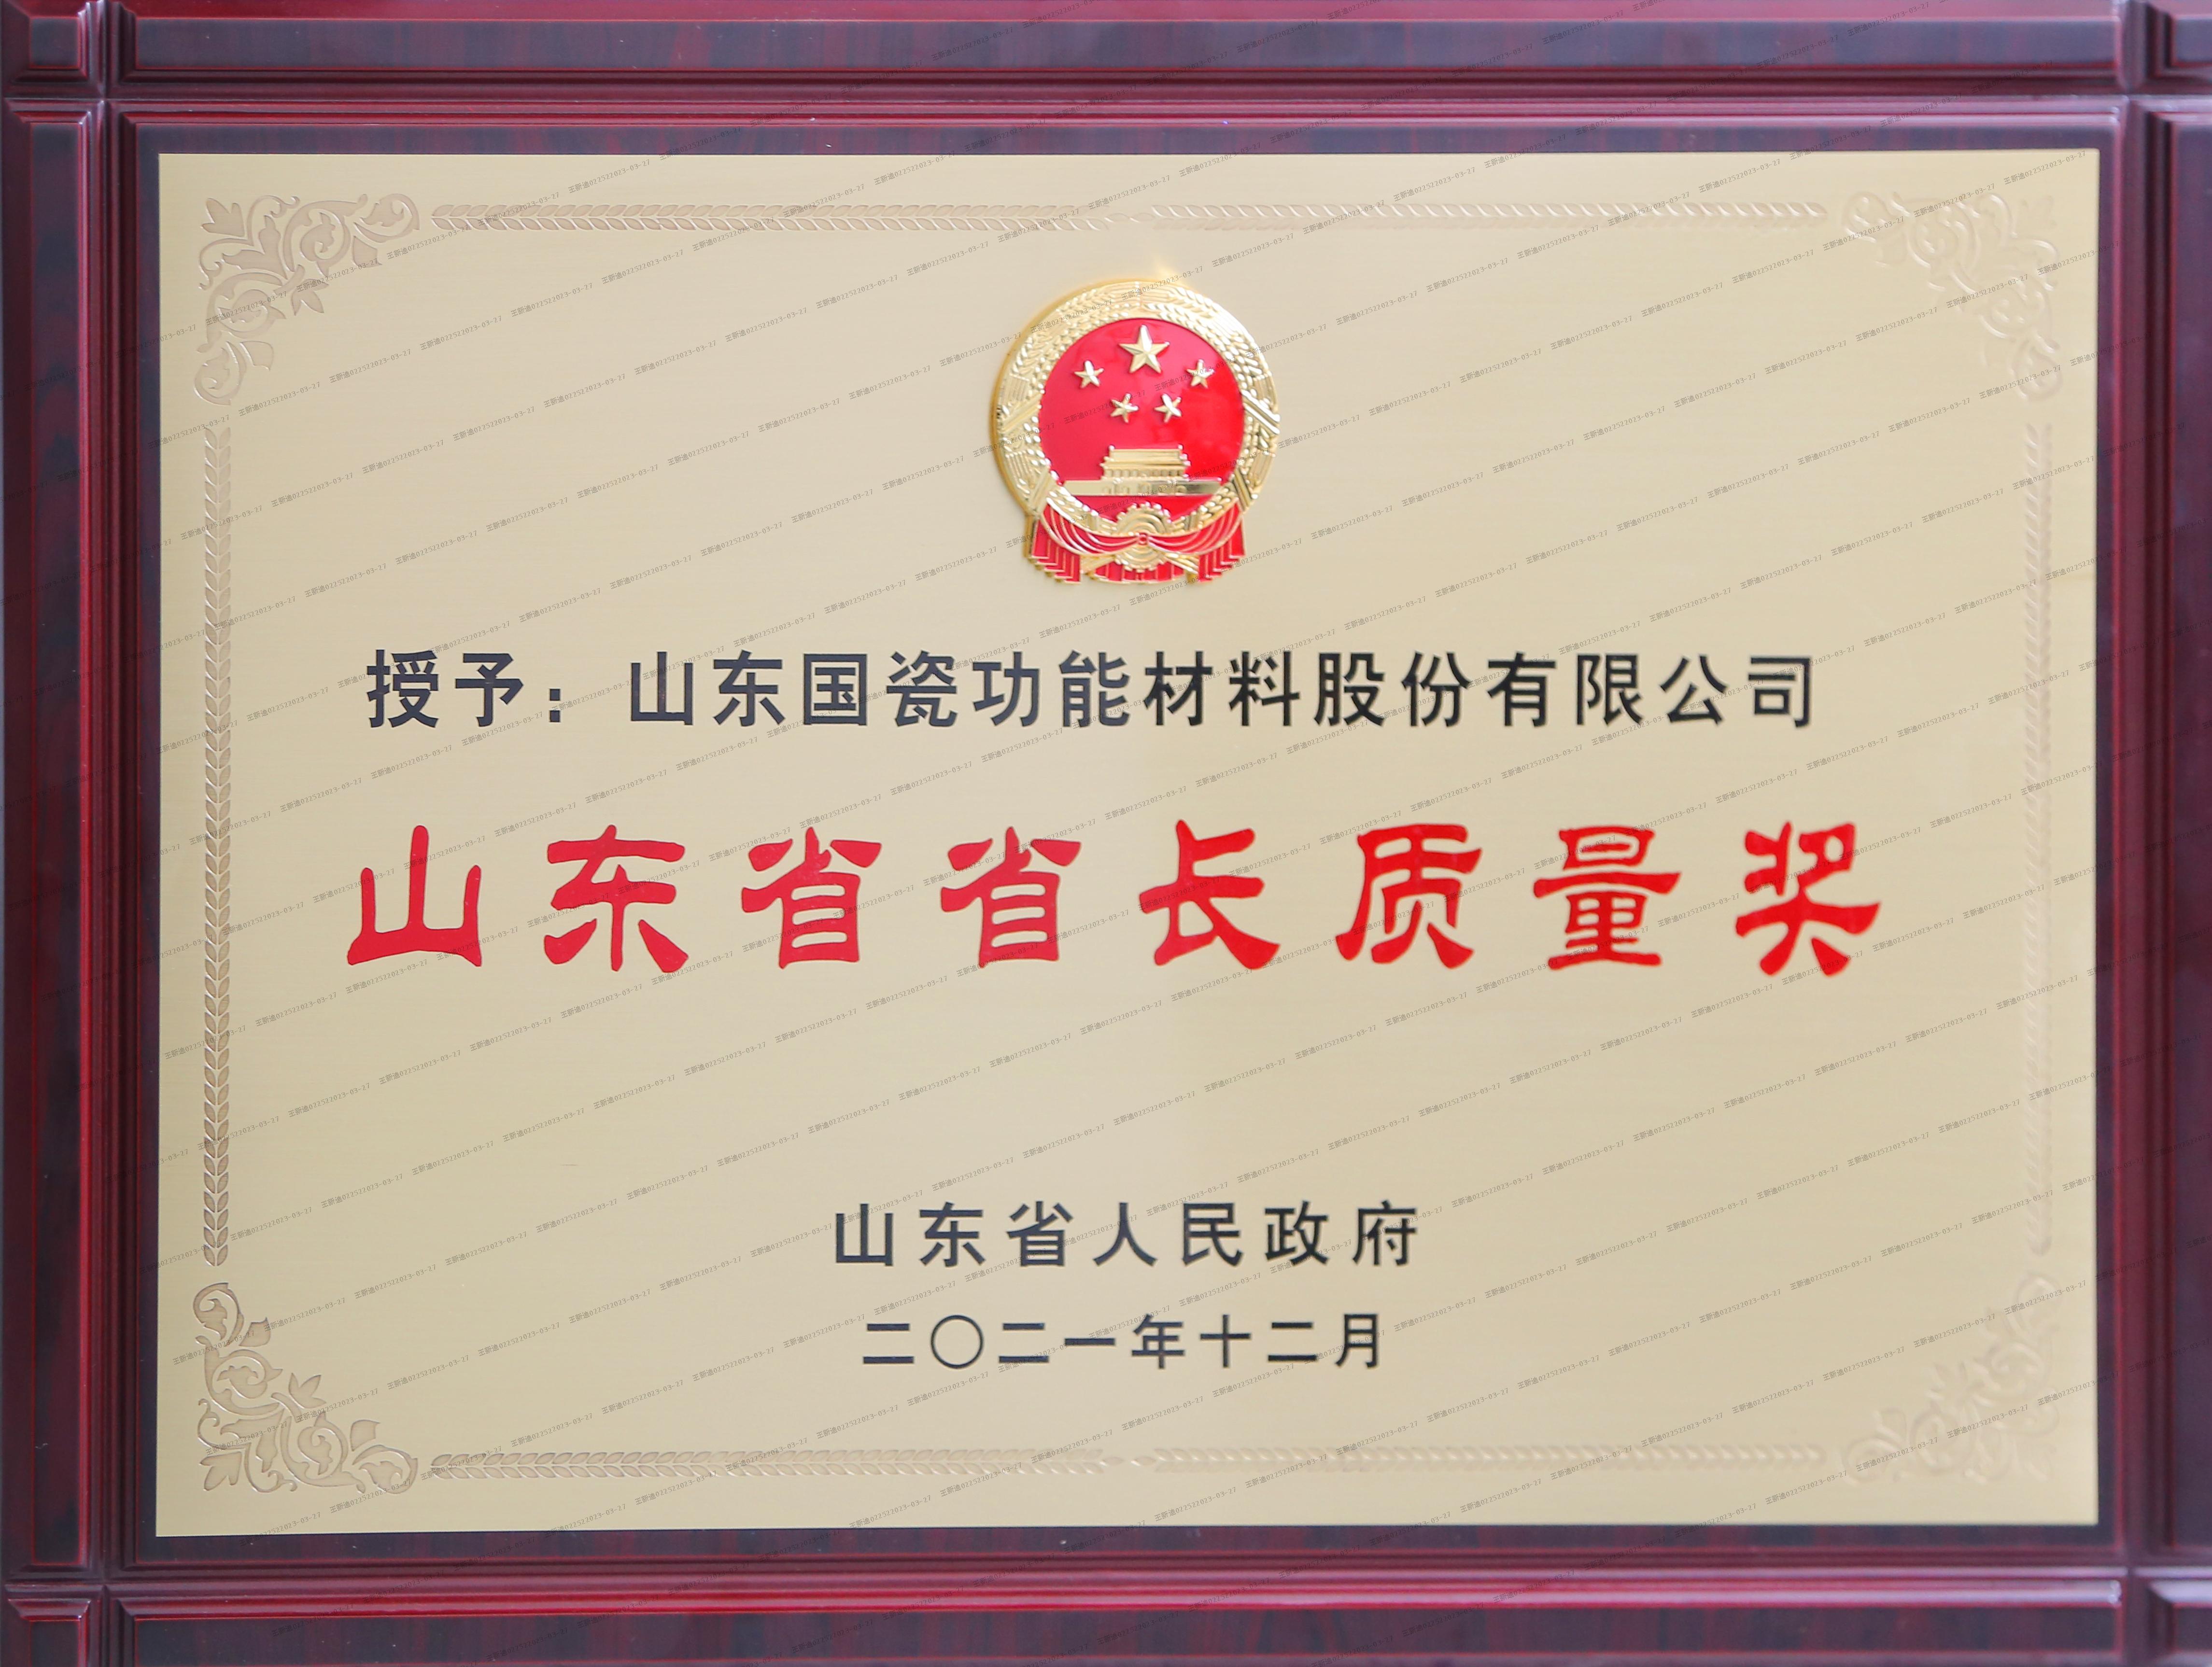 国瓷材料荣获第八届山东省省长质量奖